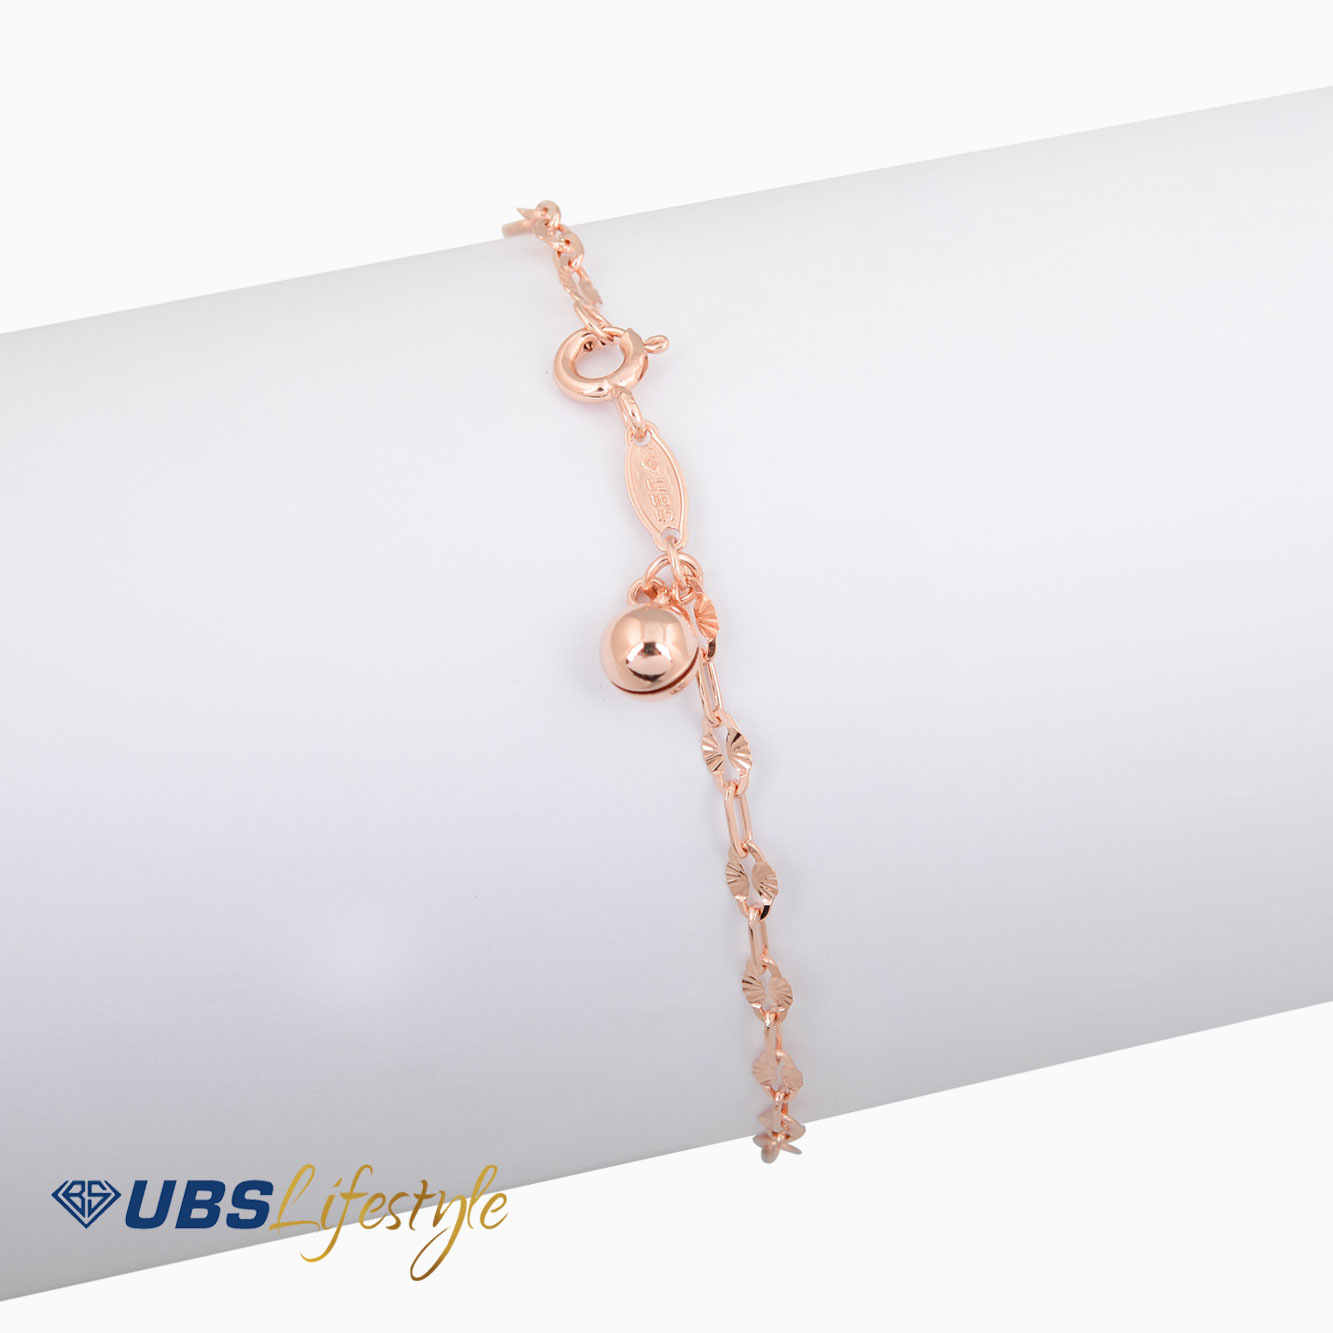 UBS Gelang Emas - Kkp3462B - 17K